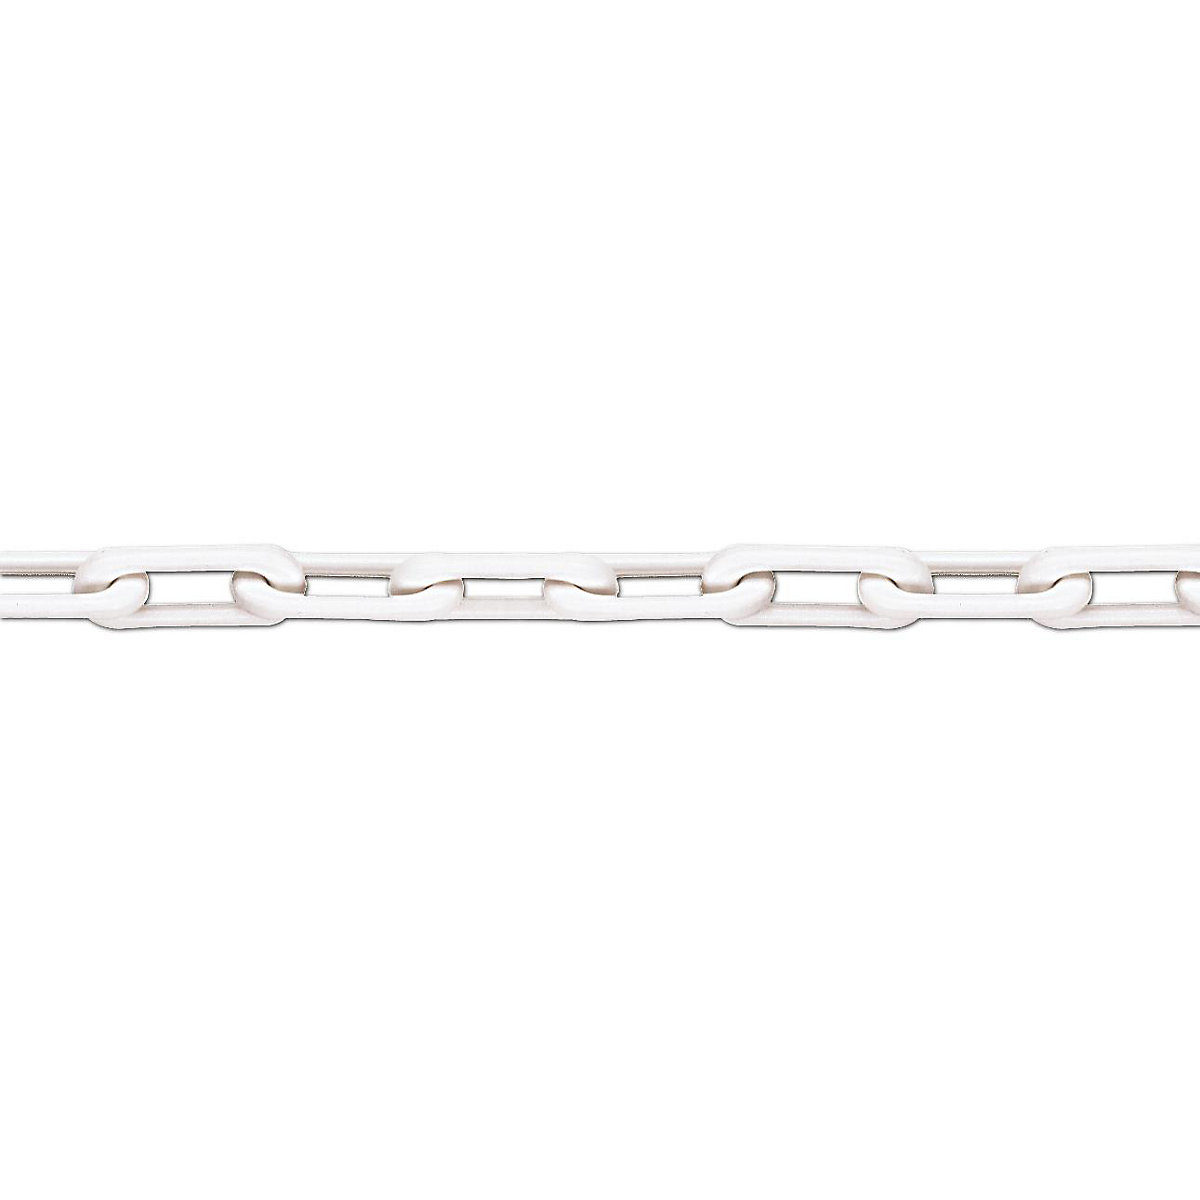 Cadena de calidad de nailon, calidad MNK 6, longitud de la unión 50 m, blanco, a partir de 4 unidades-5